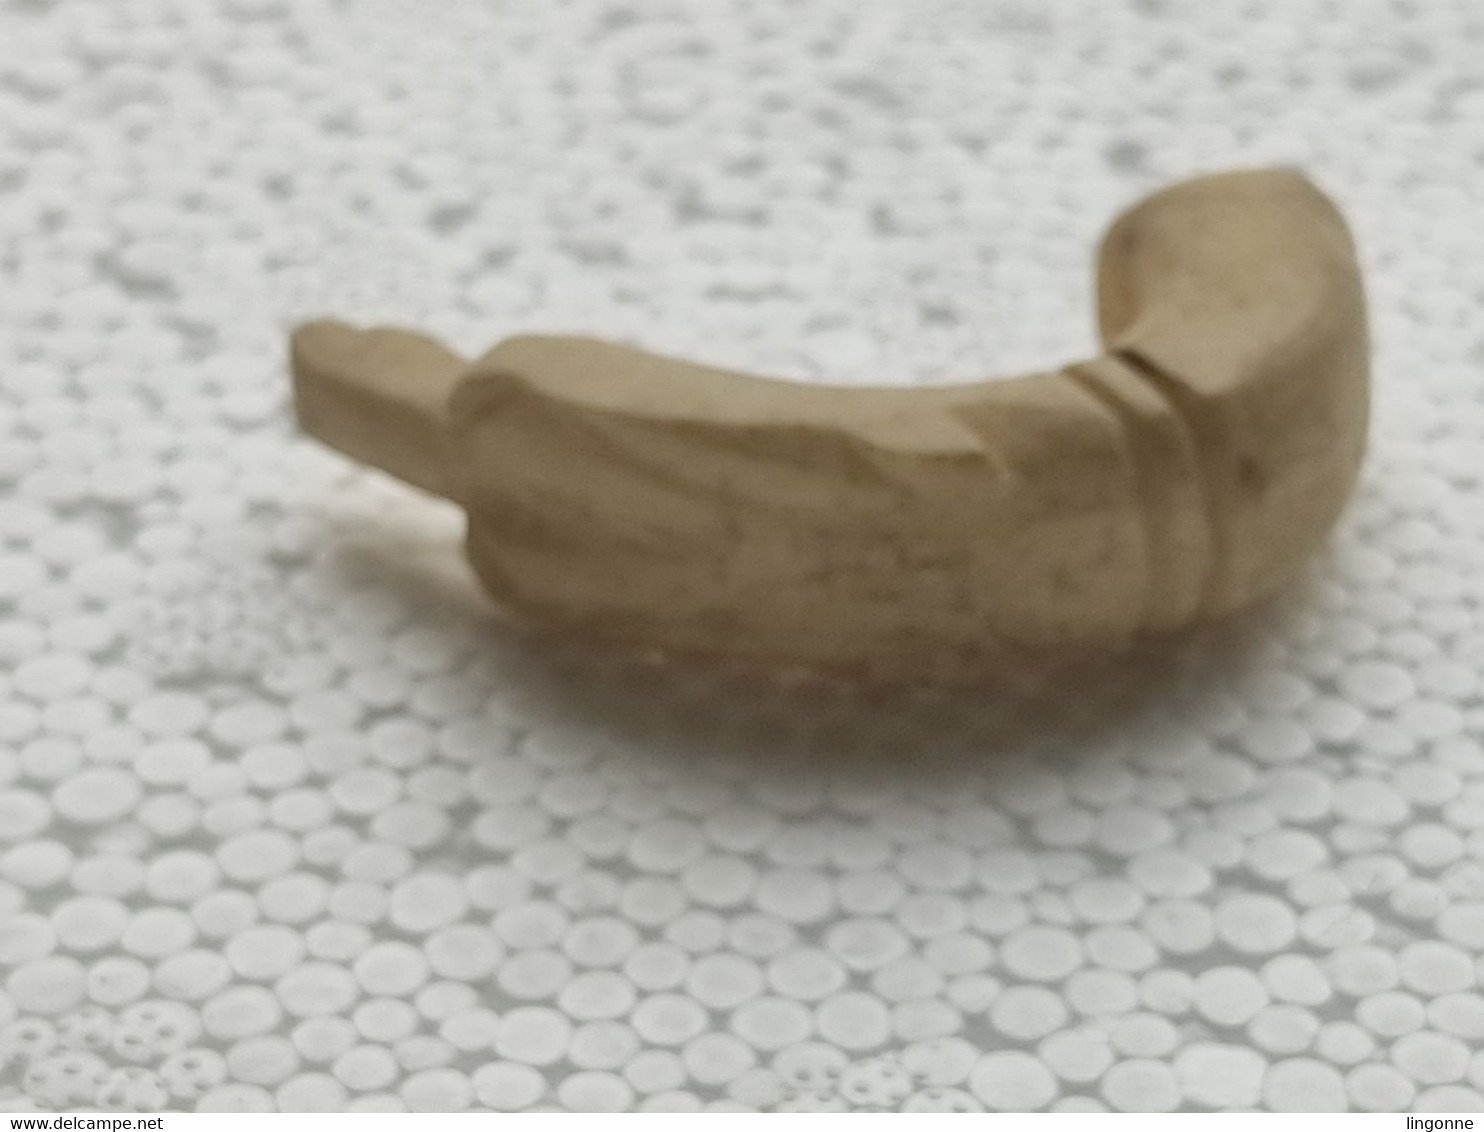 ANCIEN POMMEAU en OS TETE DE CHIEN Sculpté, DE CANNE OMBRELLE PARAPLUIE EPOQUE FIN 19ème SIECLE  Long 5 cm env